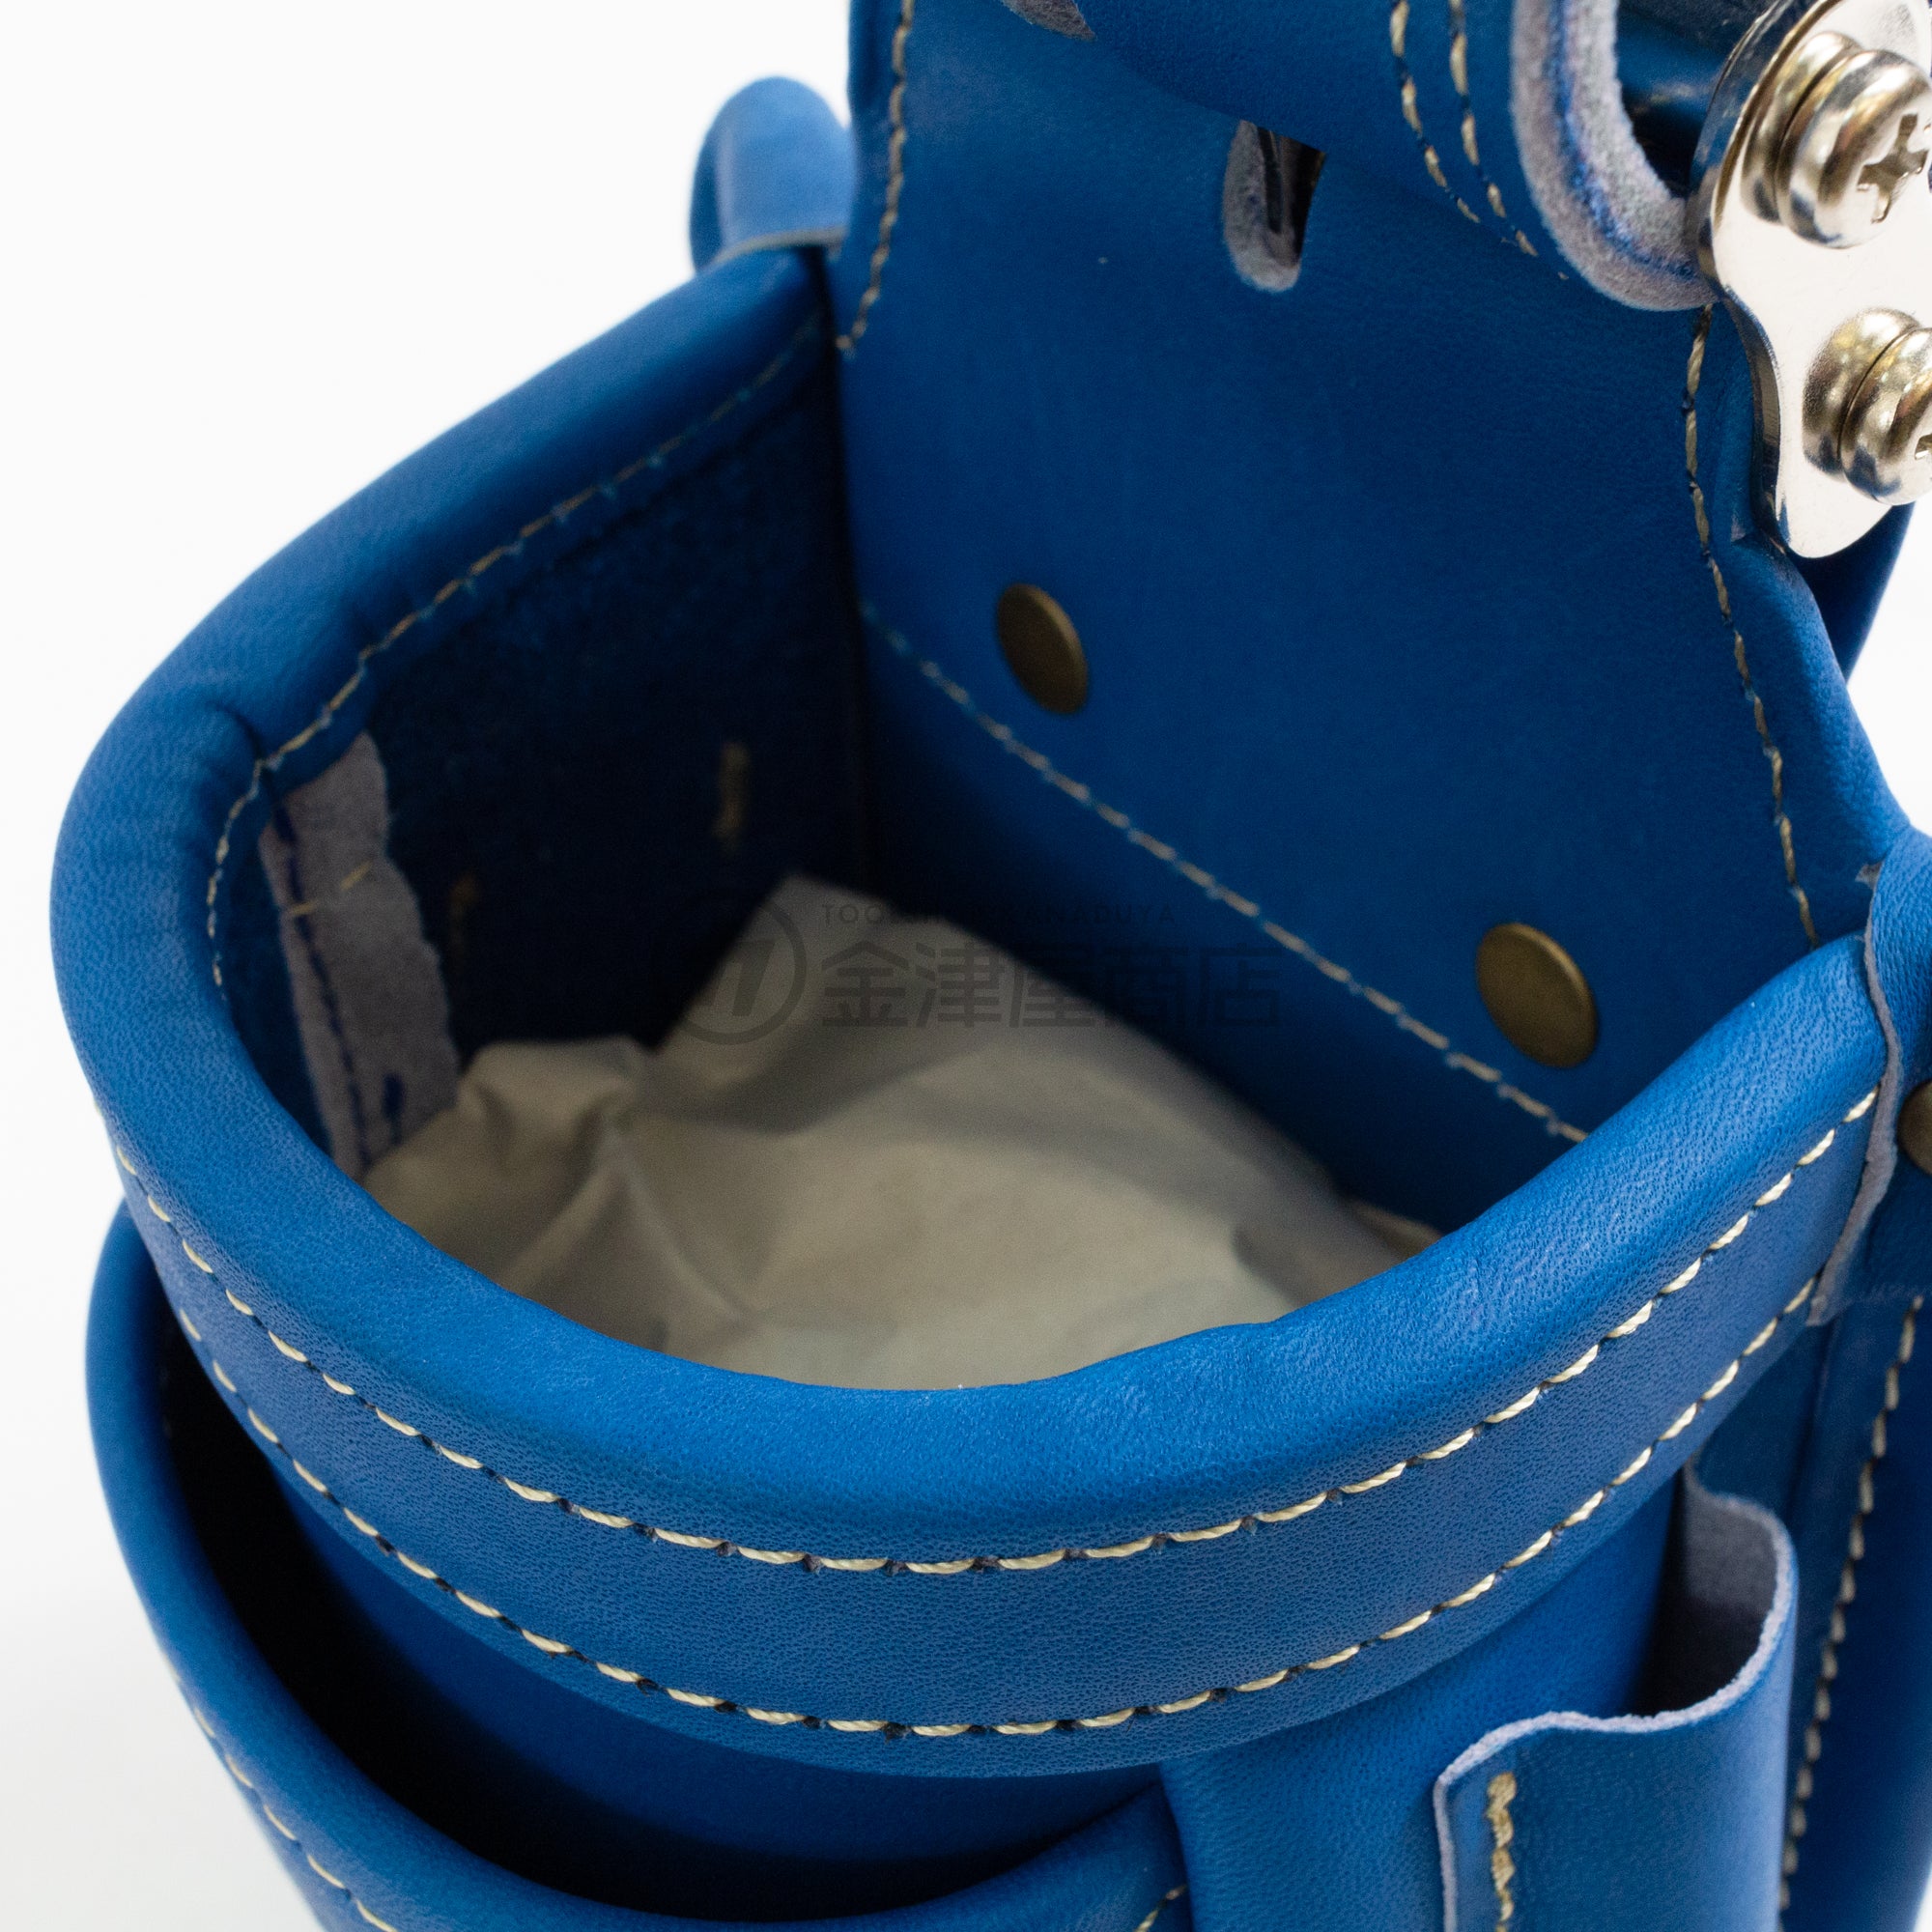 低価格の KNICKS 最高級硬式グローブ革チェーンタイプ小物腰袋